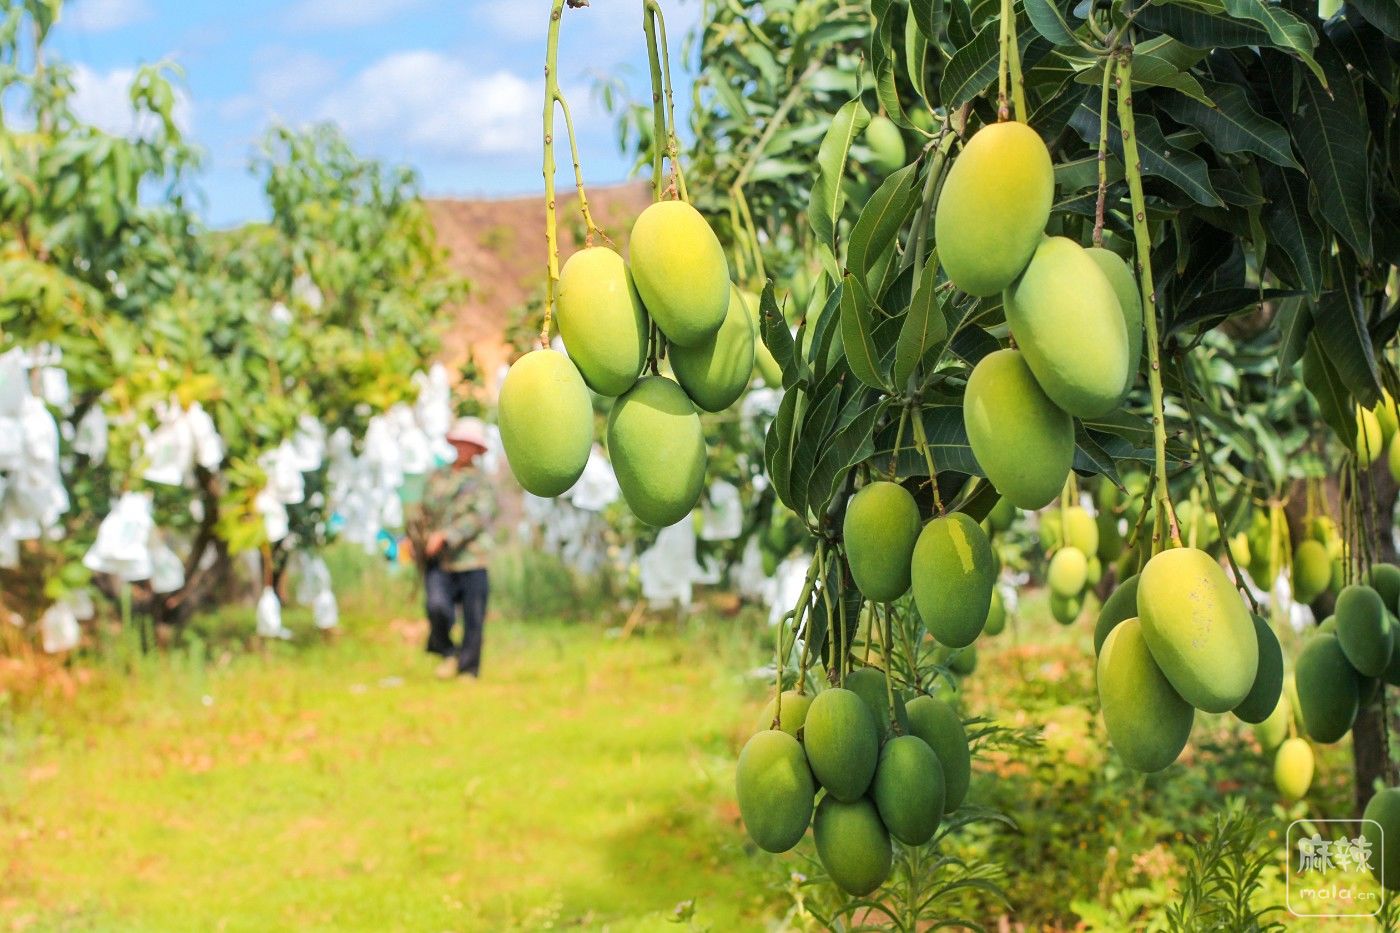 每一颗果子都有唯一身份 来自攀枝花的“攀果”亮相第八届四川农业博览会 - 封面新闻